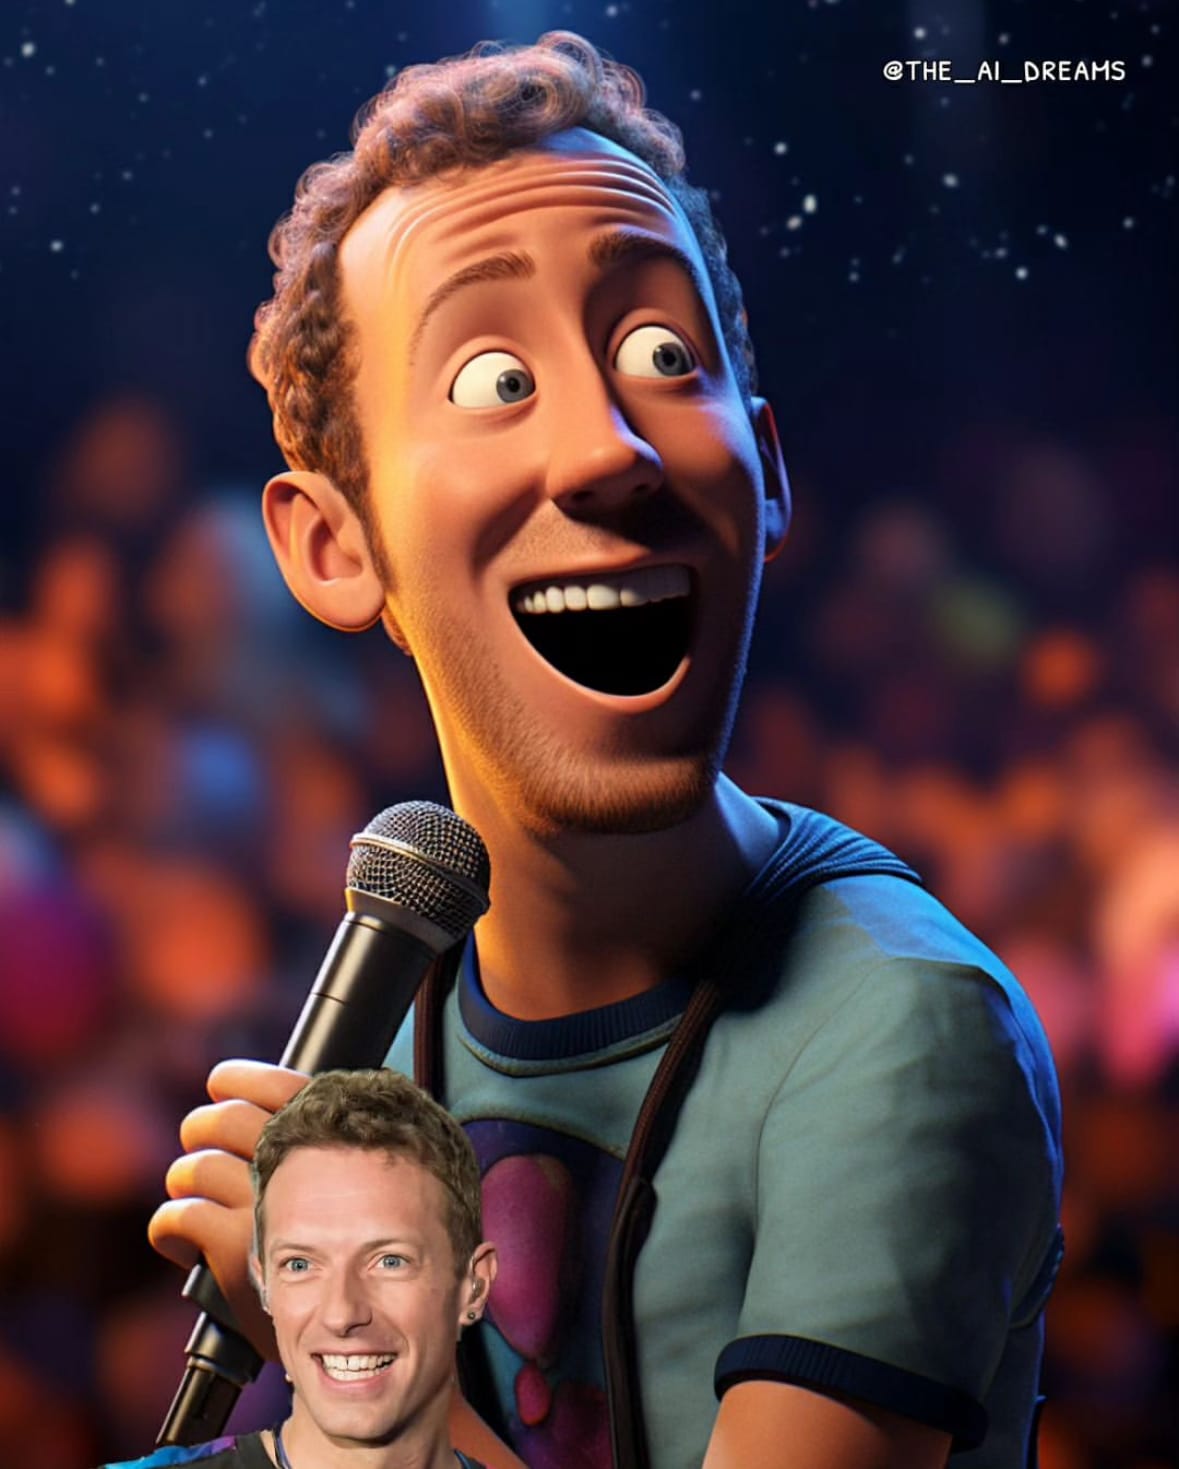 นักร้องคนดังระดับโลก ตัวละครแอนิเมชั่น Disney Pixar จาก AI